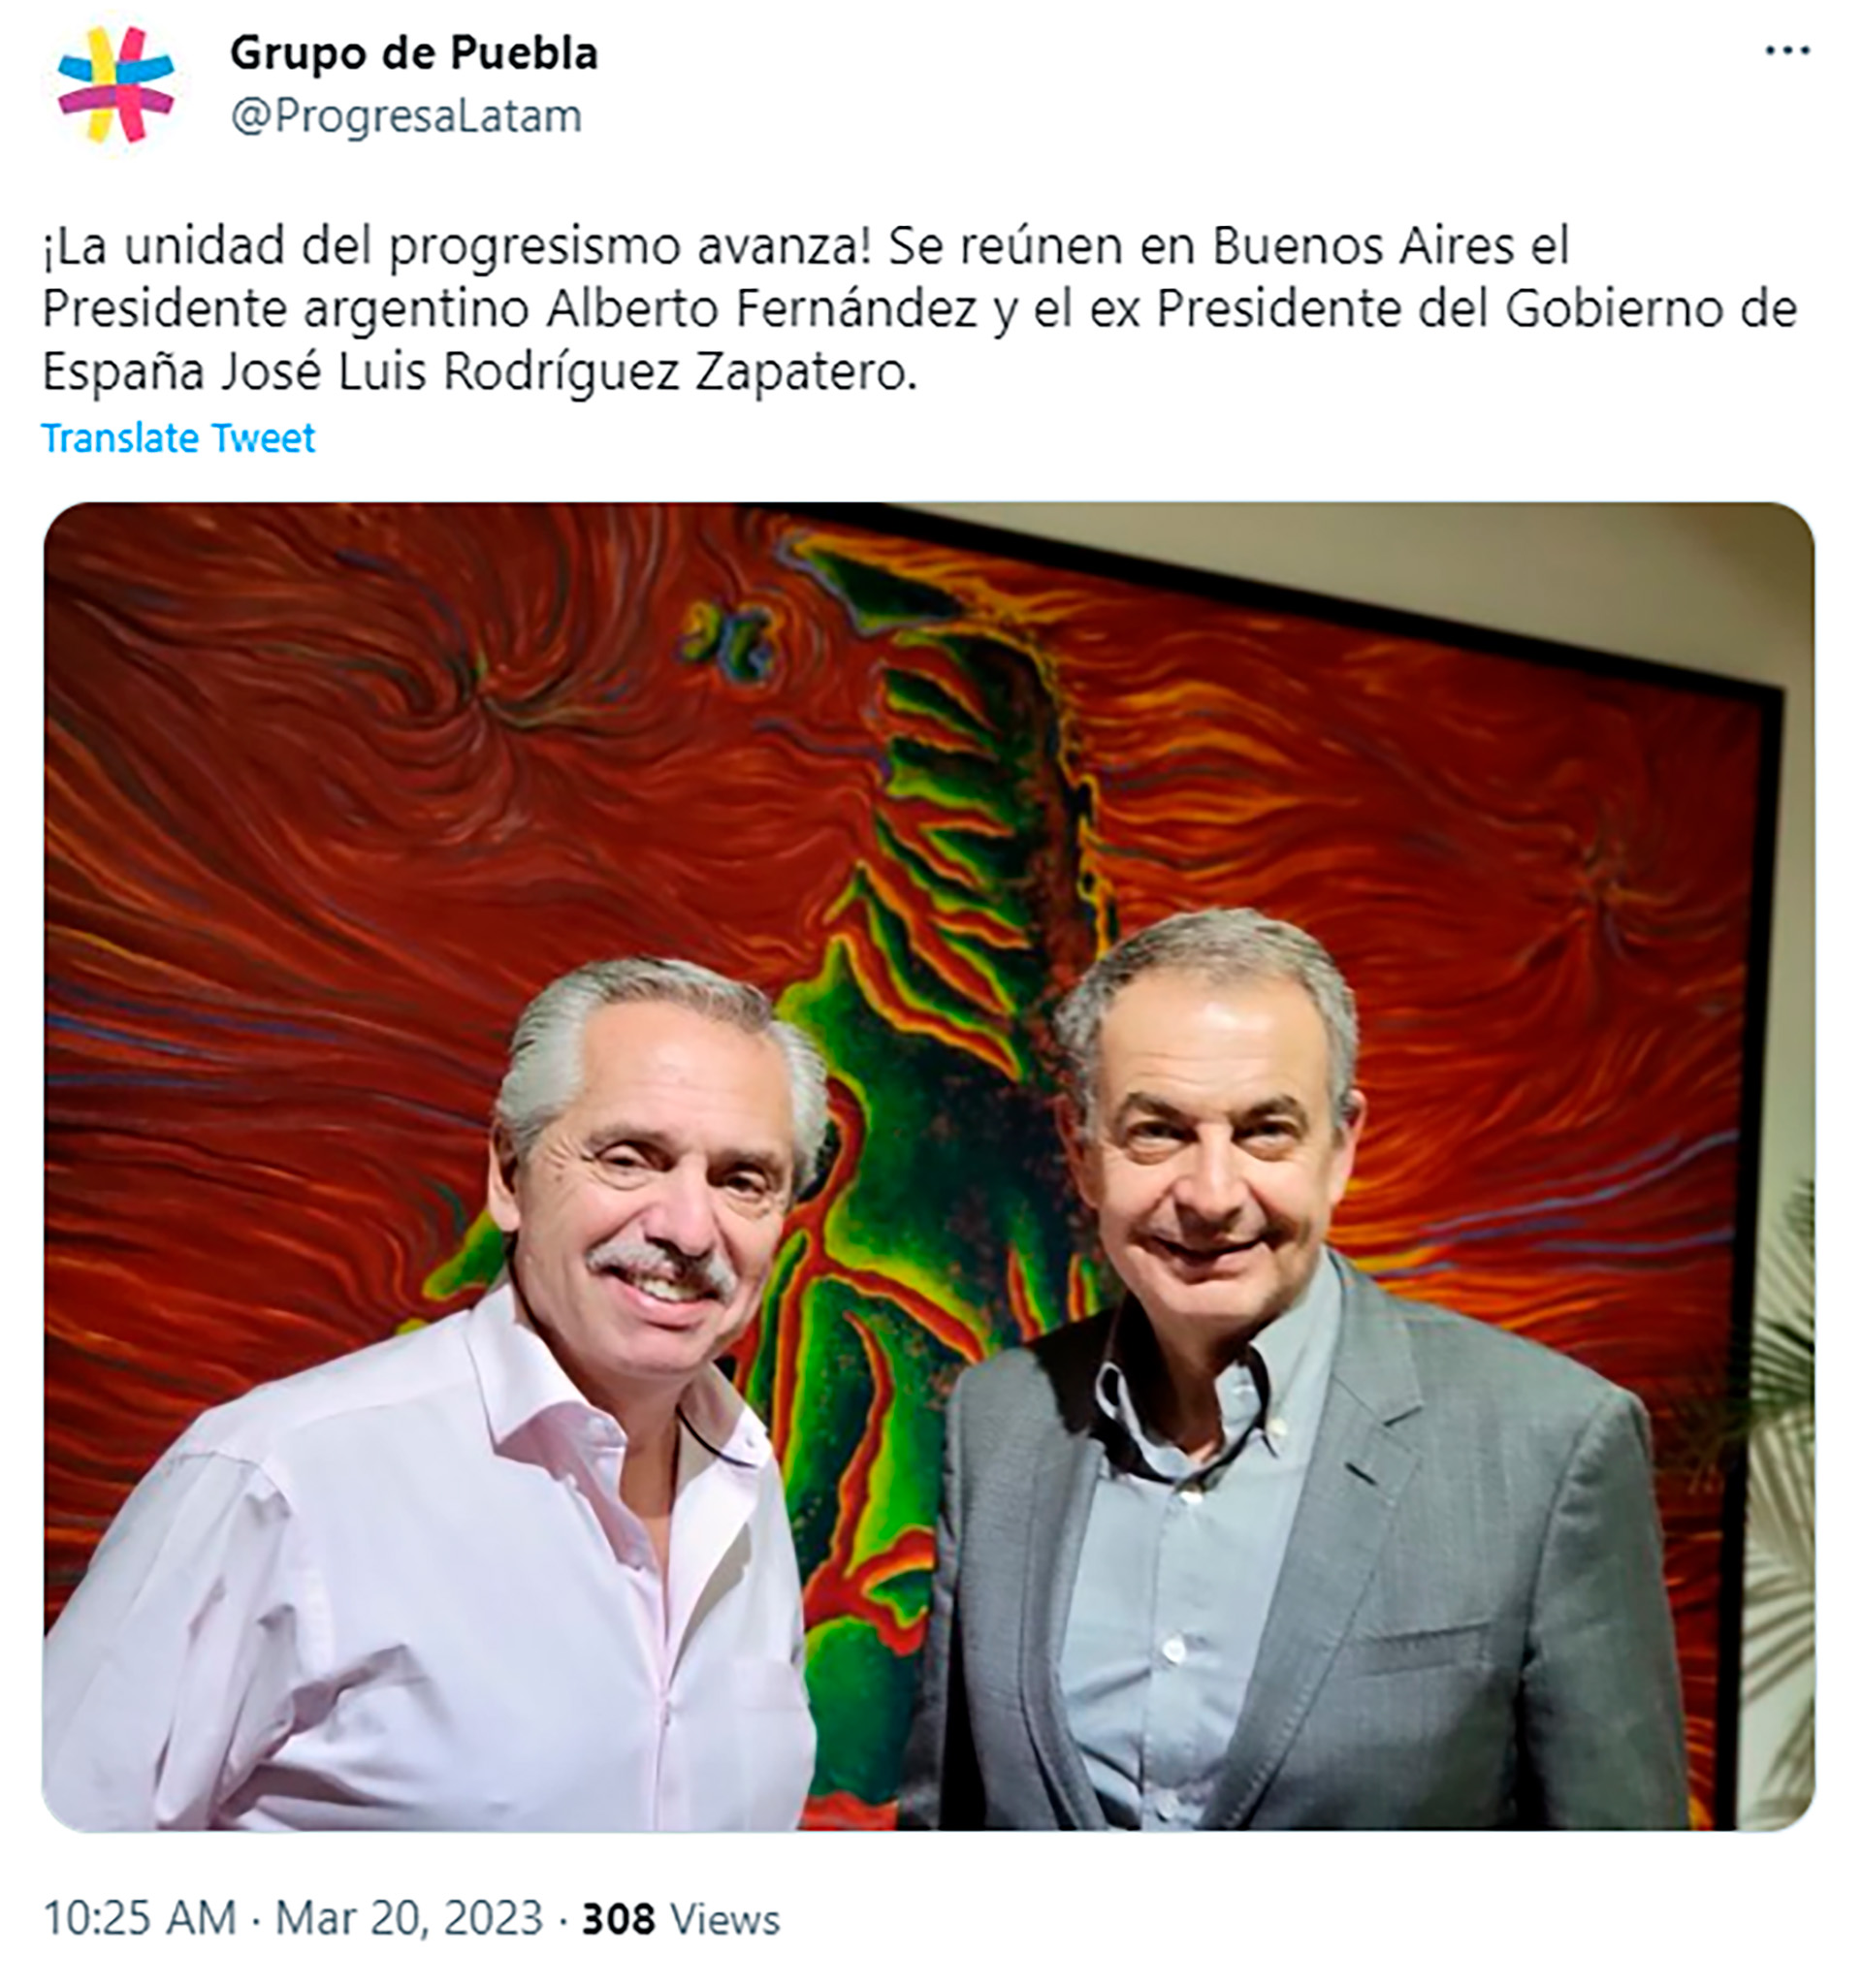 El Grupo de Puebla publicó en Twitter el encuentro entre Alberto Fernández y el ex presidente español, José Luis Rodríguez Zapatero.